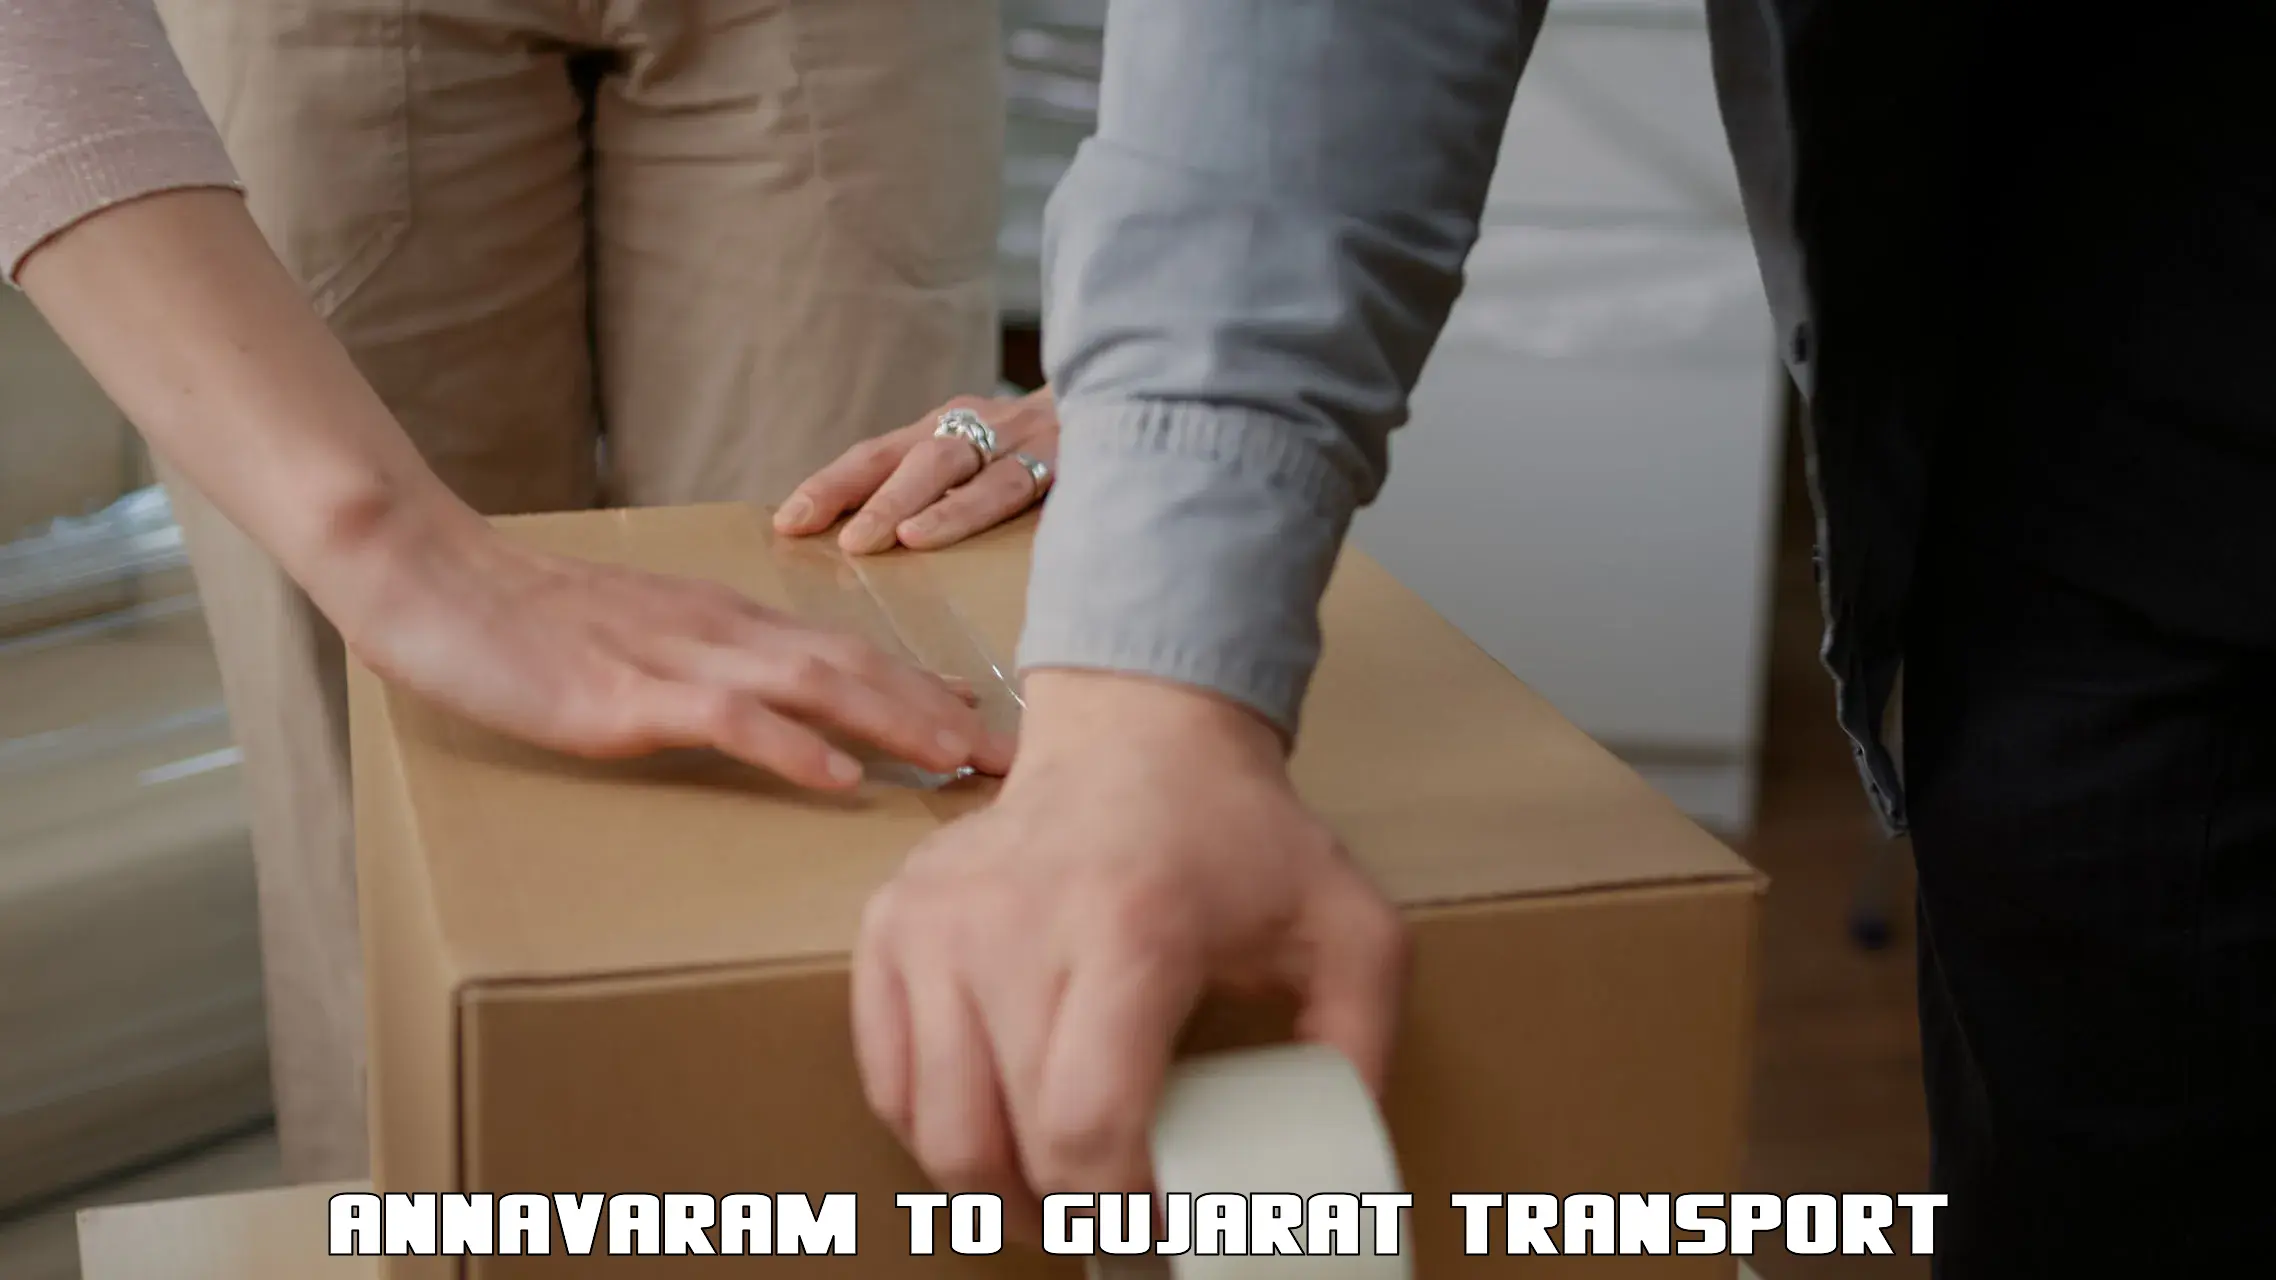 Daily transport service Annavaram to Vijapur